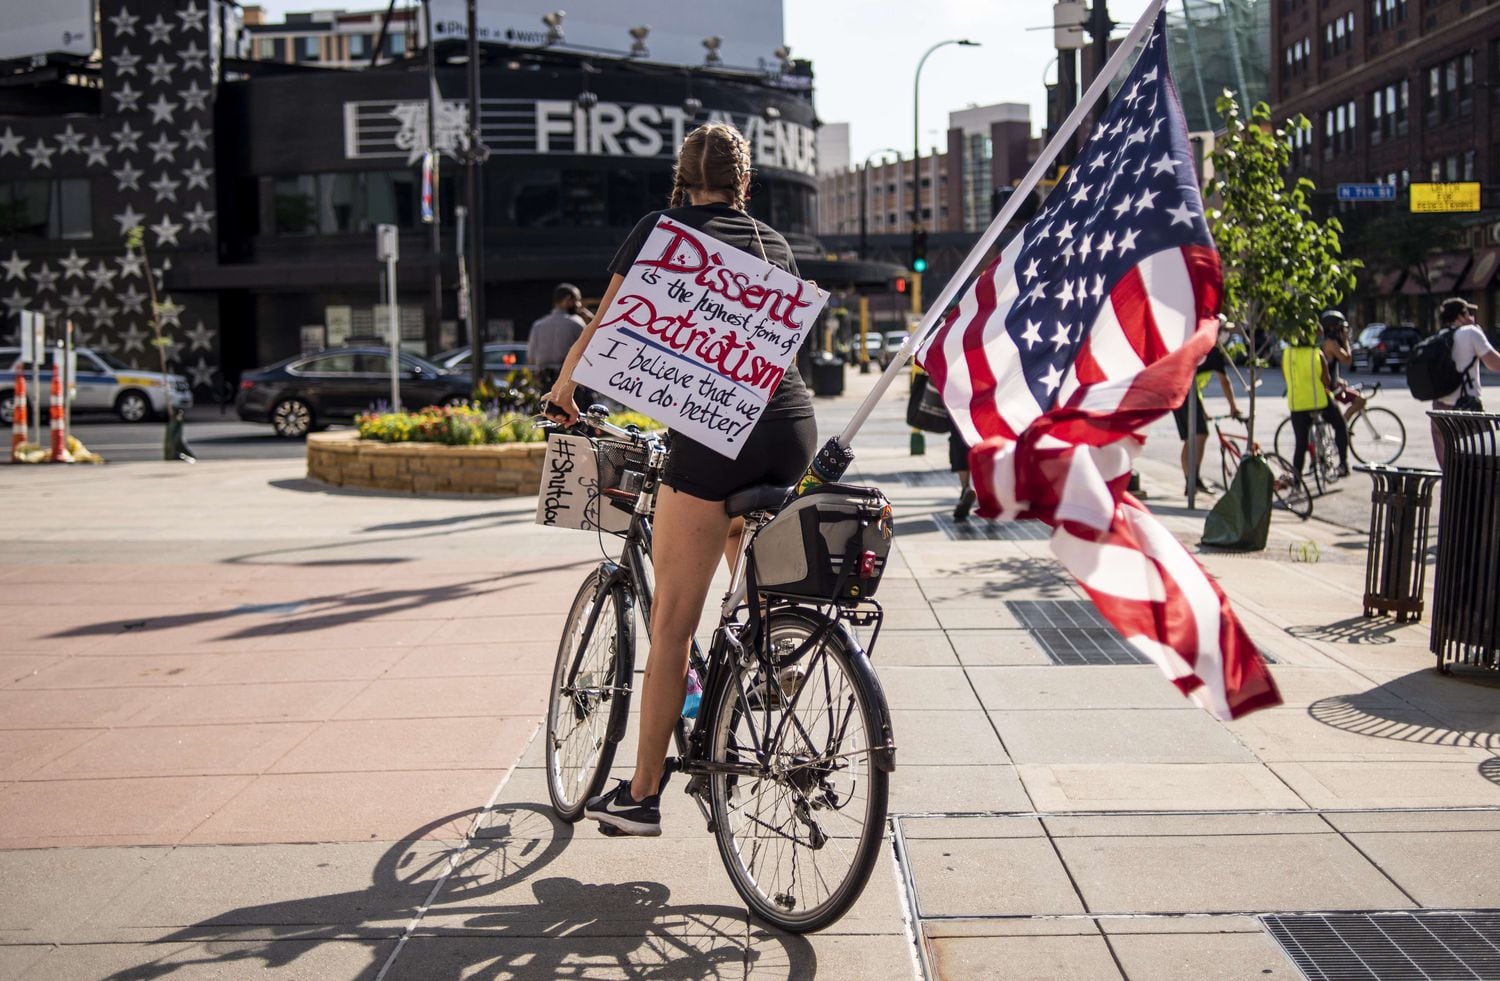 Manifestante da marcha Roll4Justice no dia 4 de julho em Minneapolis, Minnesota, um protesto que criticou a comemoração da data.